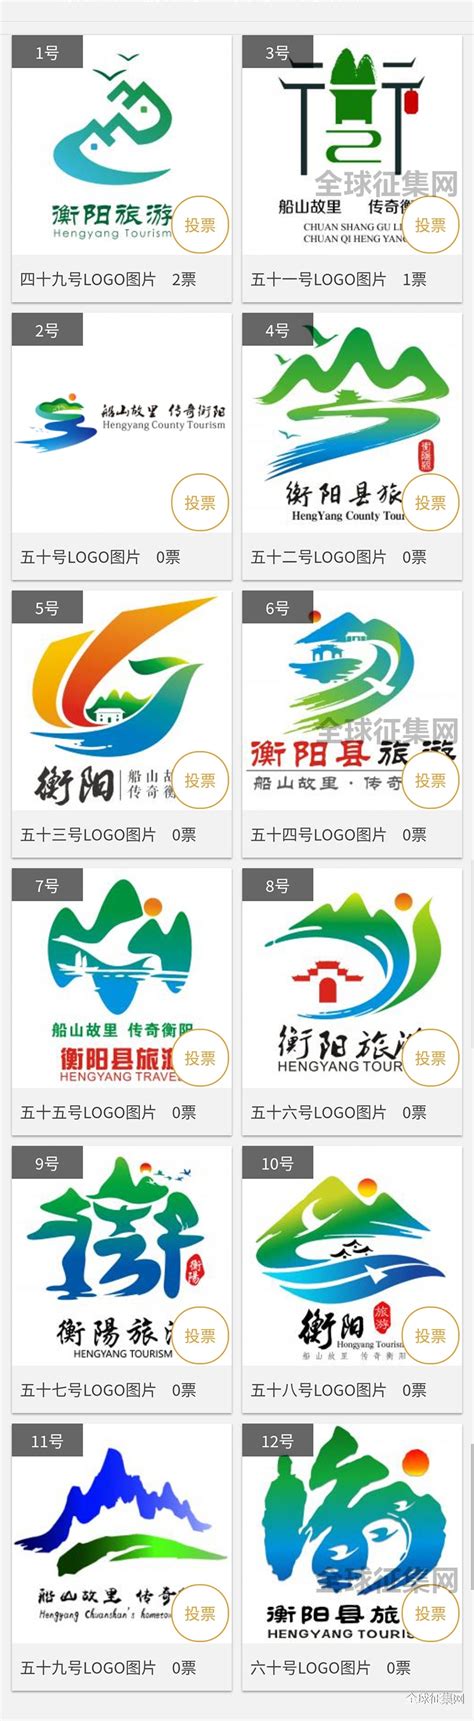 衡阳县旅游形象宣传标志网络评选活动（第五组）开始了，-设计揭晓-设计大赛网